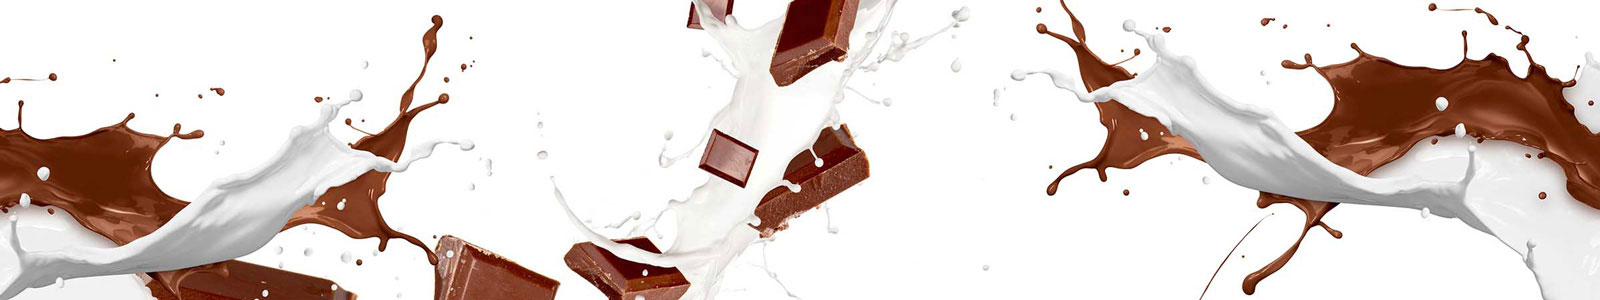 №3919 - Плитки шоколада в струях молока и горячего шоколада